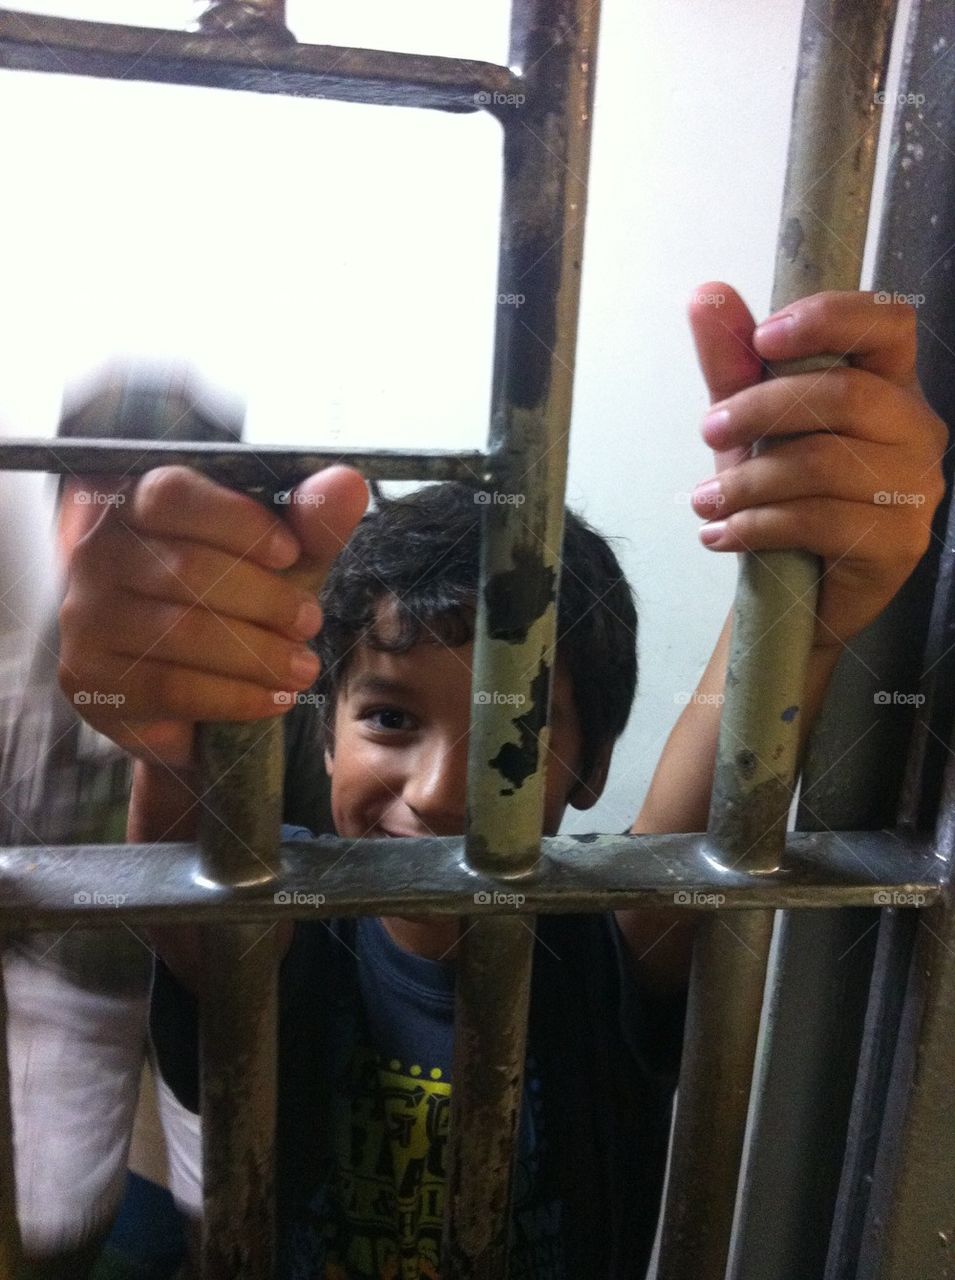 Boy behind bars